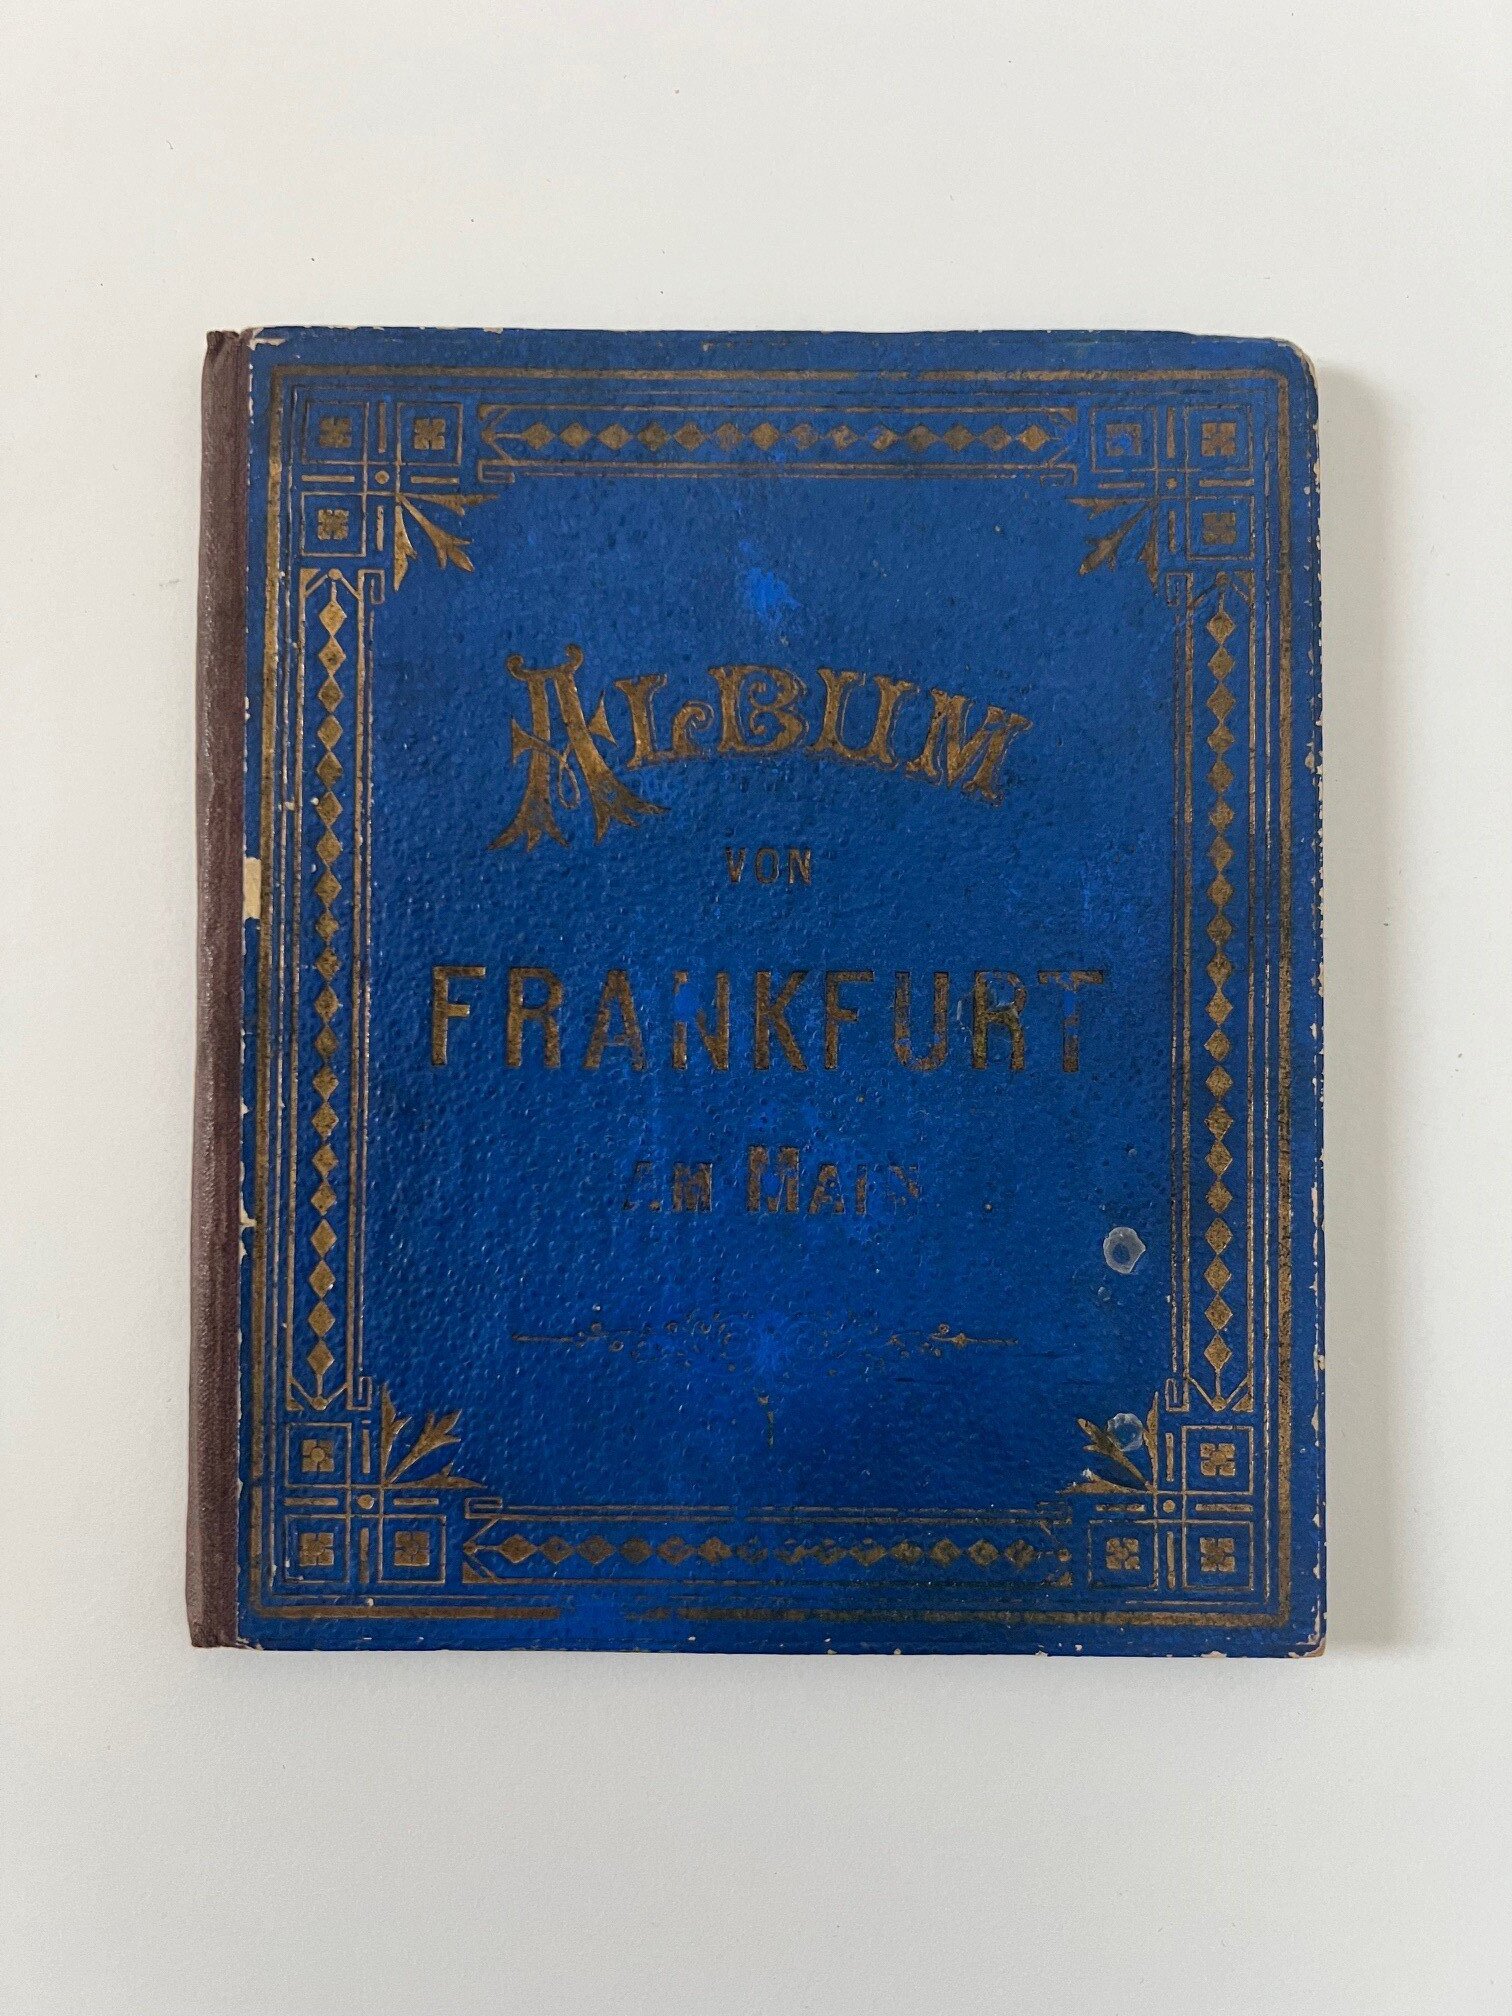 Unbekannter Hersteller, Album von Frankfurt a. M., 25 Lithographien als Leporello, ca. 1890. (Taunus-Rhein-Main - Regionalgeschichtliche Sammlung Dr. Stefan Naas CC BY-NC-SA)